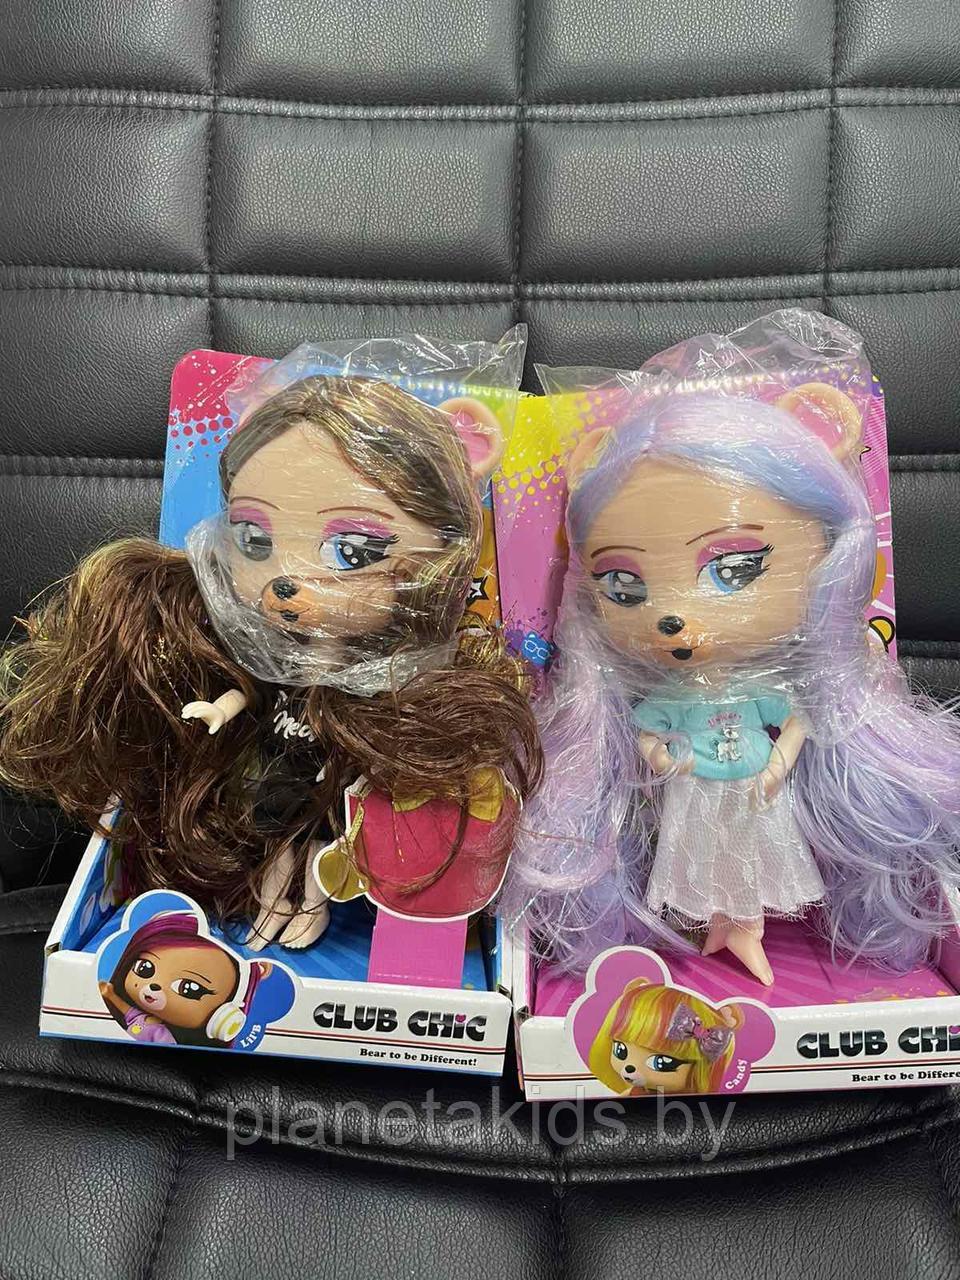 Кукла - питомец ''Club chic: Pippa'' Клаб Чик, фото 1